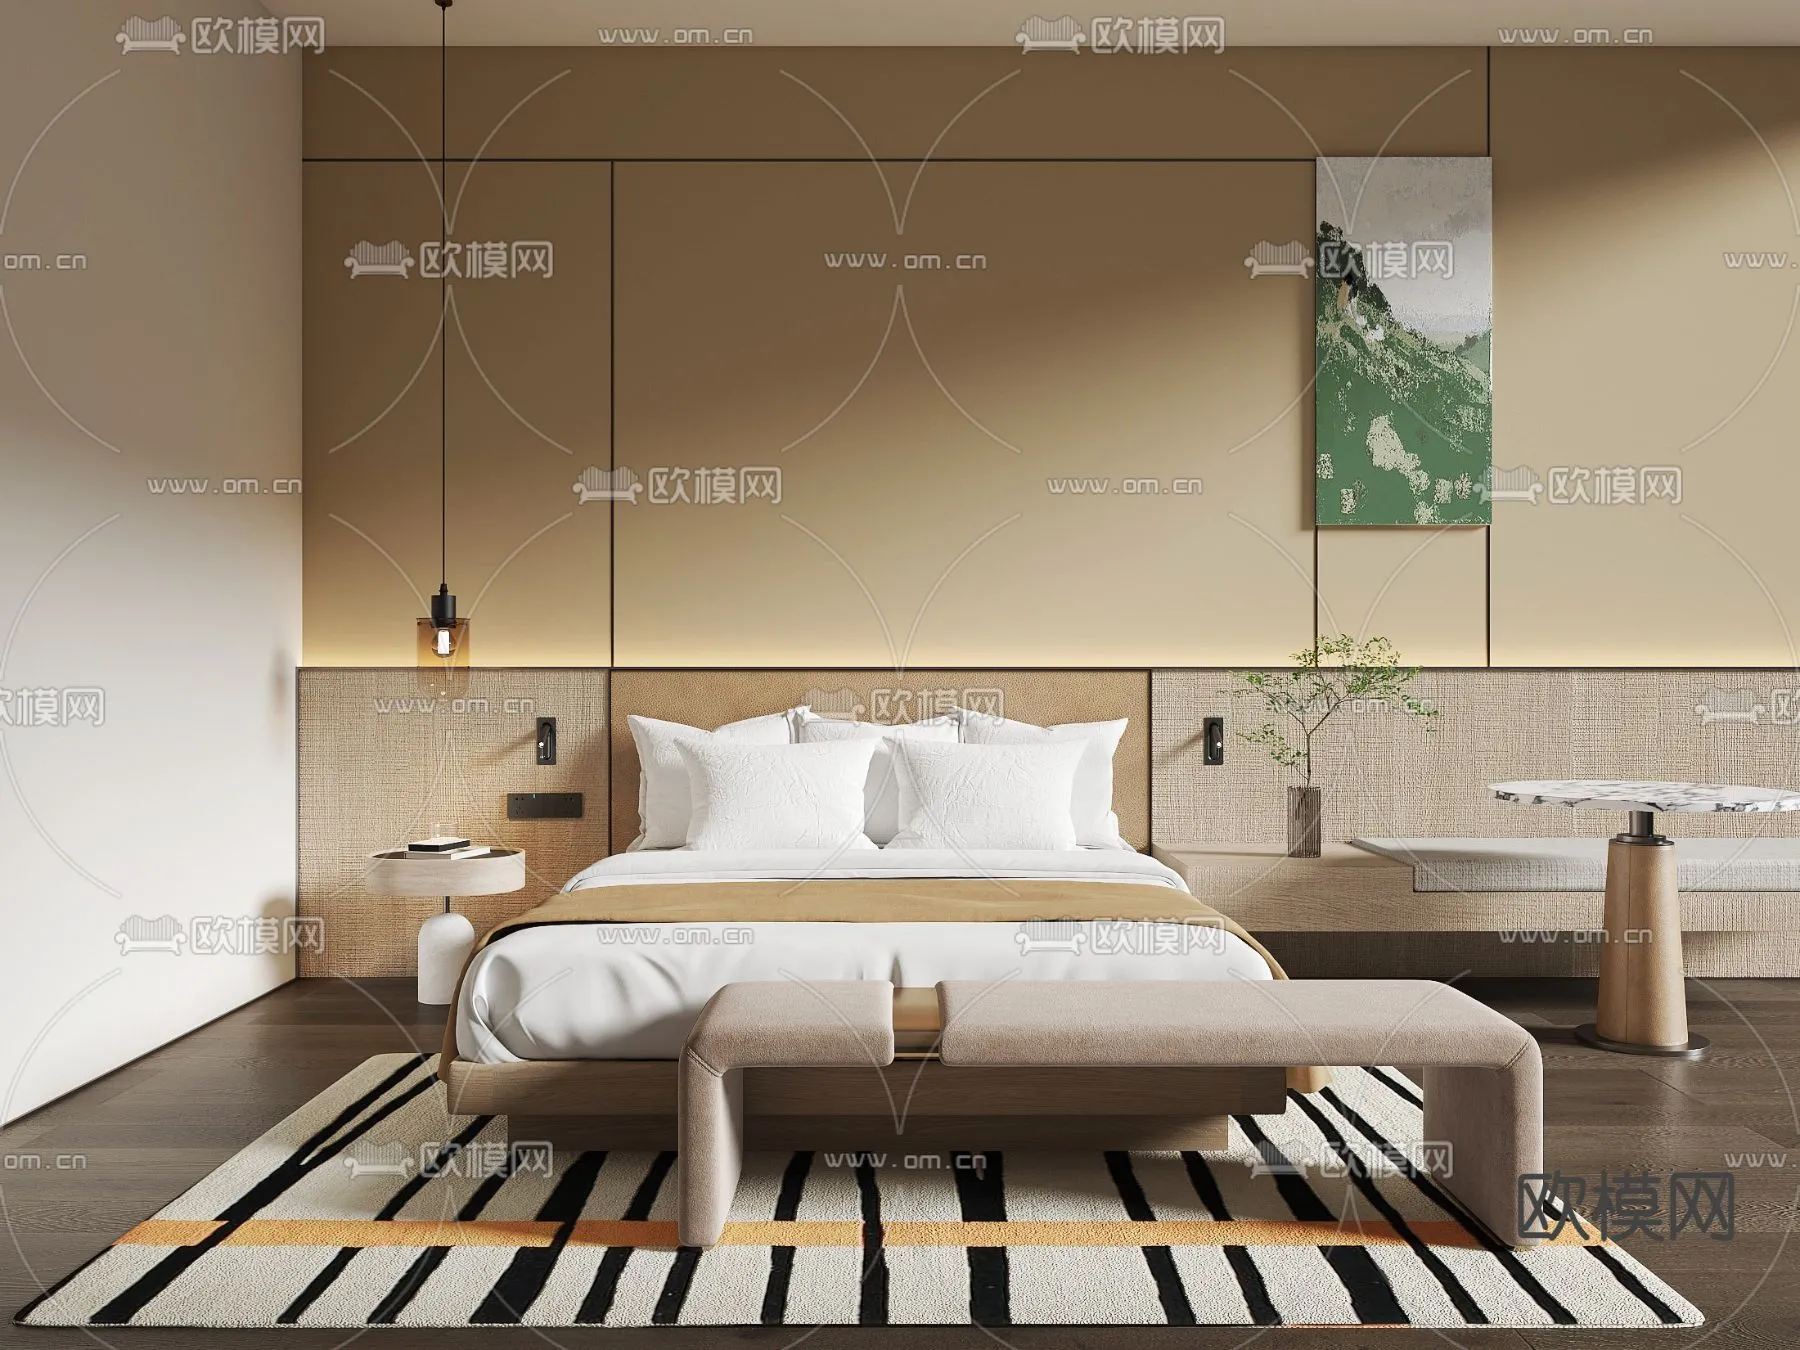 Hotel Room – Bedroom For Hotel 3D Models – 008